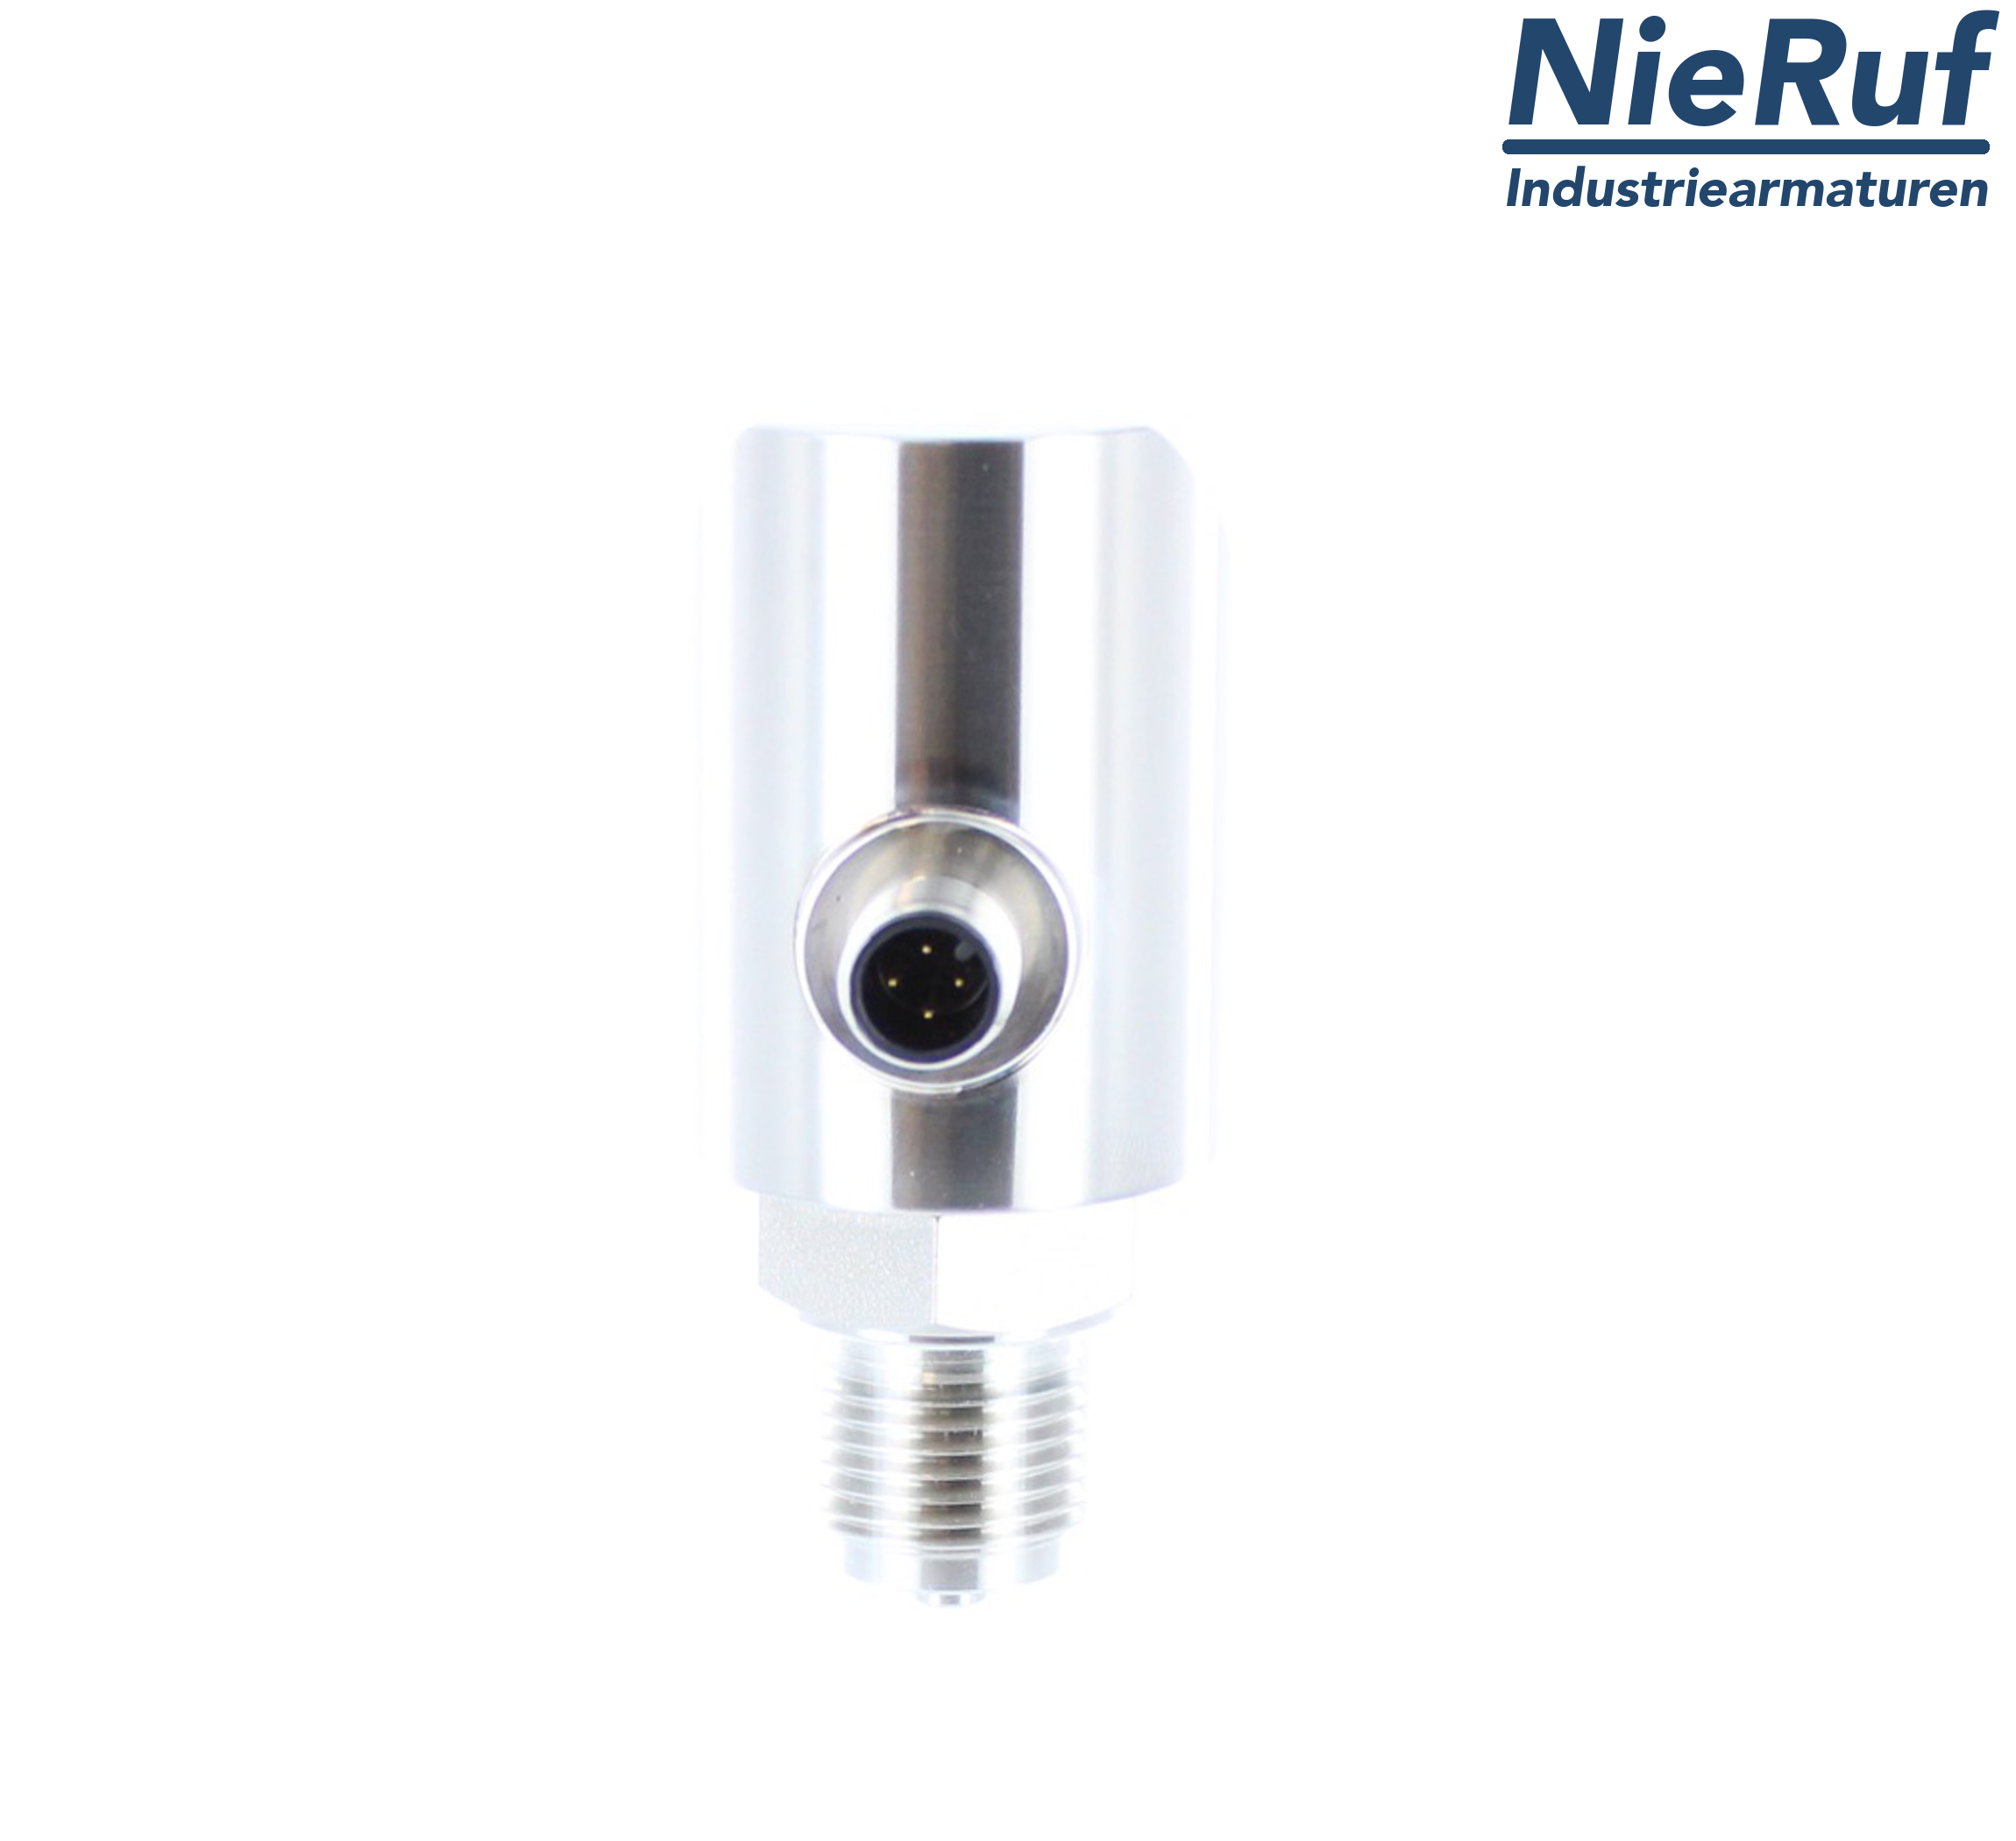 digital pressure sensor G 1/2" B 4-wire: 1xPNP, 1x4 - 20mA, Desina FPM 0,0 - 0,25 bar